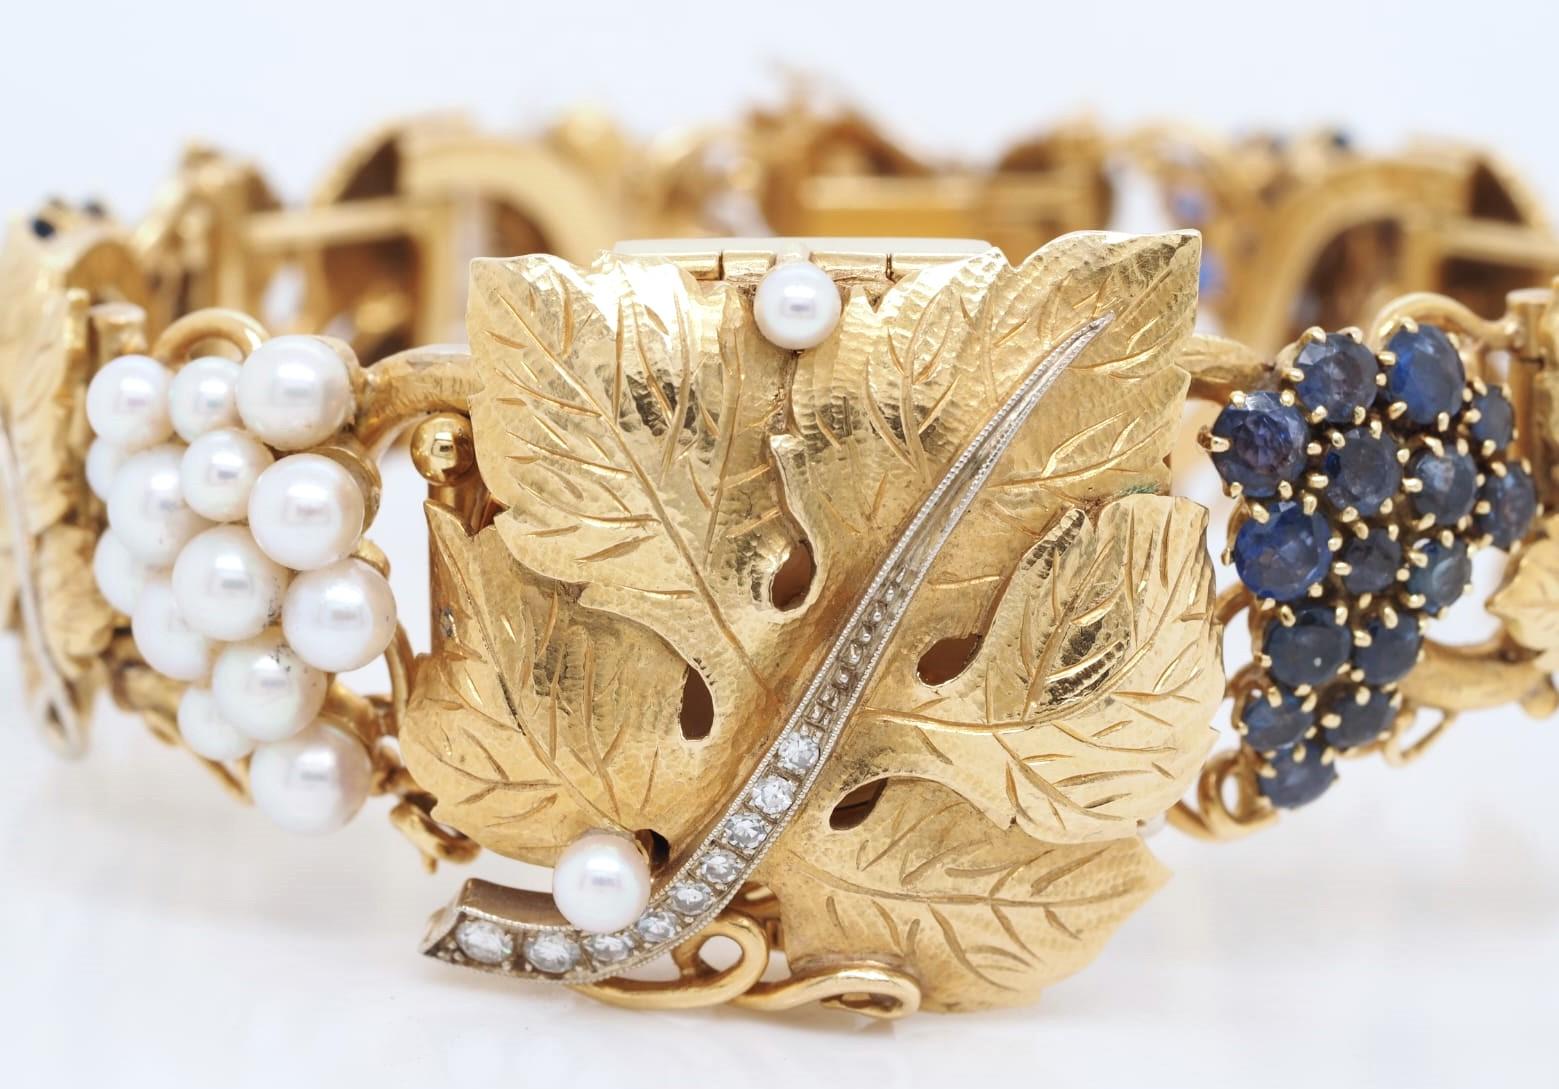 Diese atemberaubende OMEGA-Armbanduhr ist ein wahrer Schatz mit einem luxuriösen Armband aus 18 Karat Gelbgold und eleganten Diamantakzenten. Die Uhr verfügt über ein rundes, weißes Zifferblatt mit Analoganzeige und ein mechanisches Schweizer